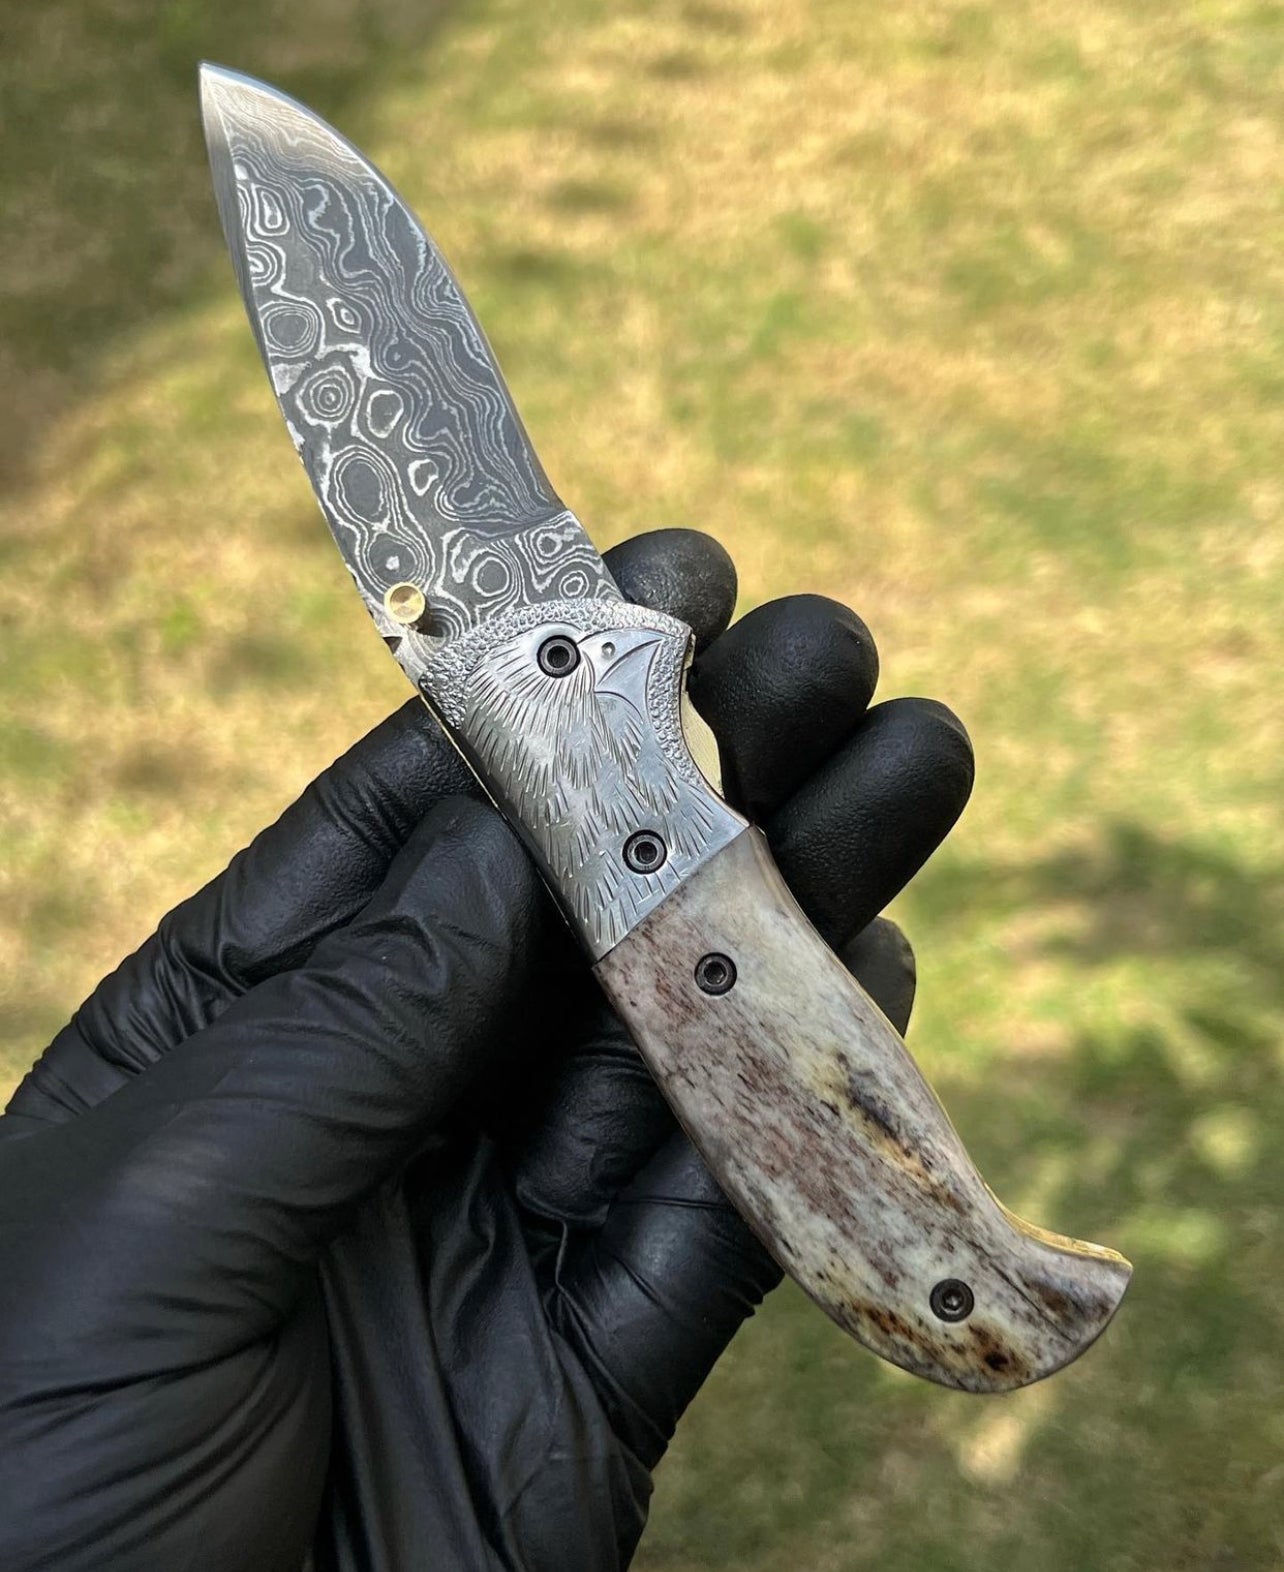 Damascus pocket folding knife